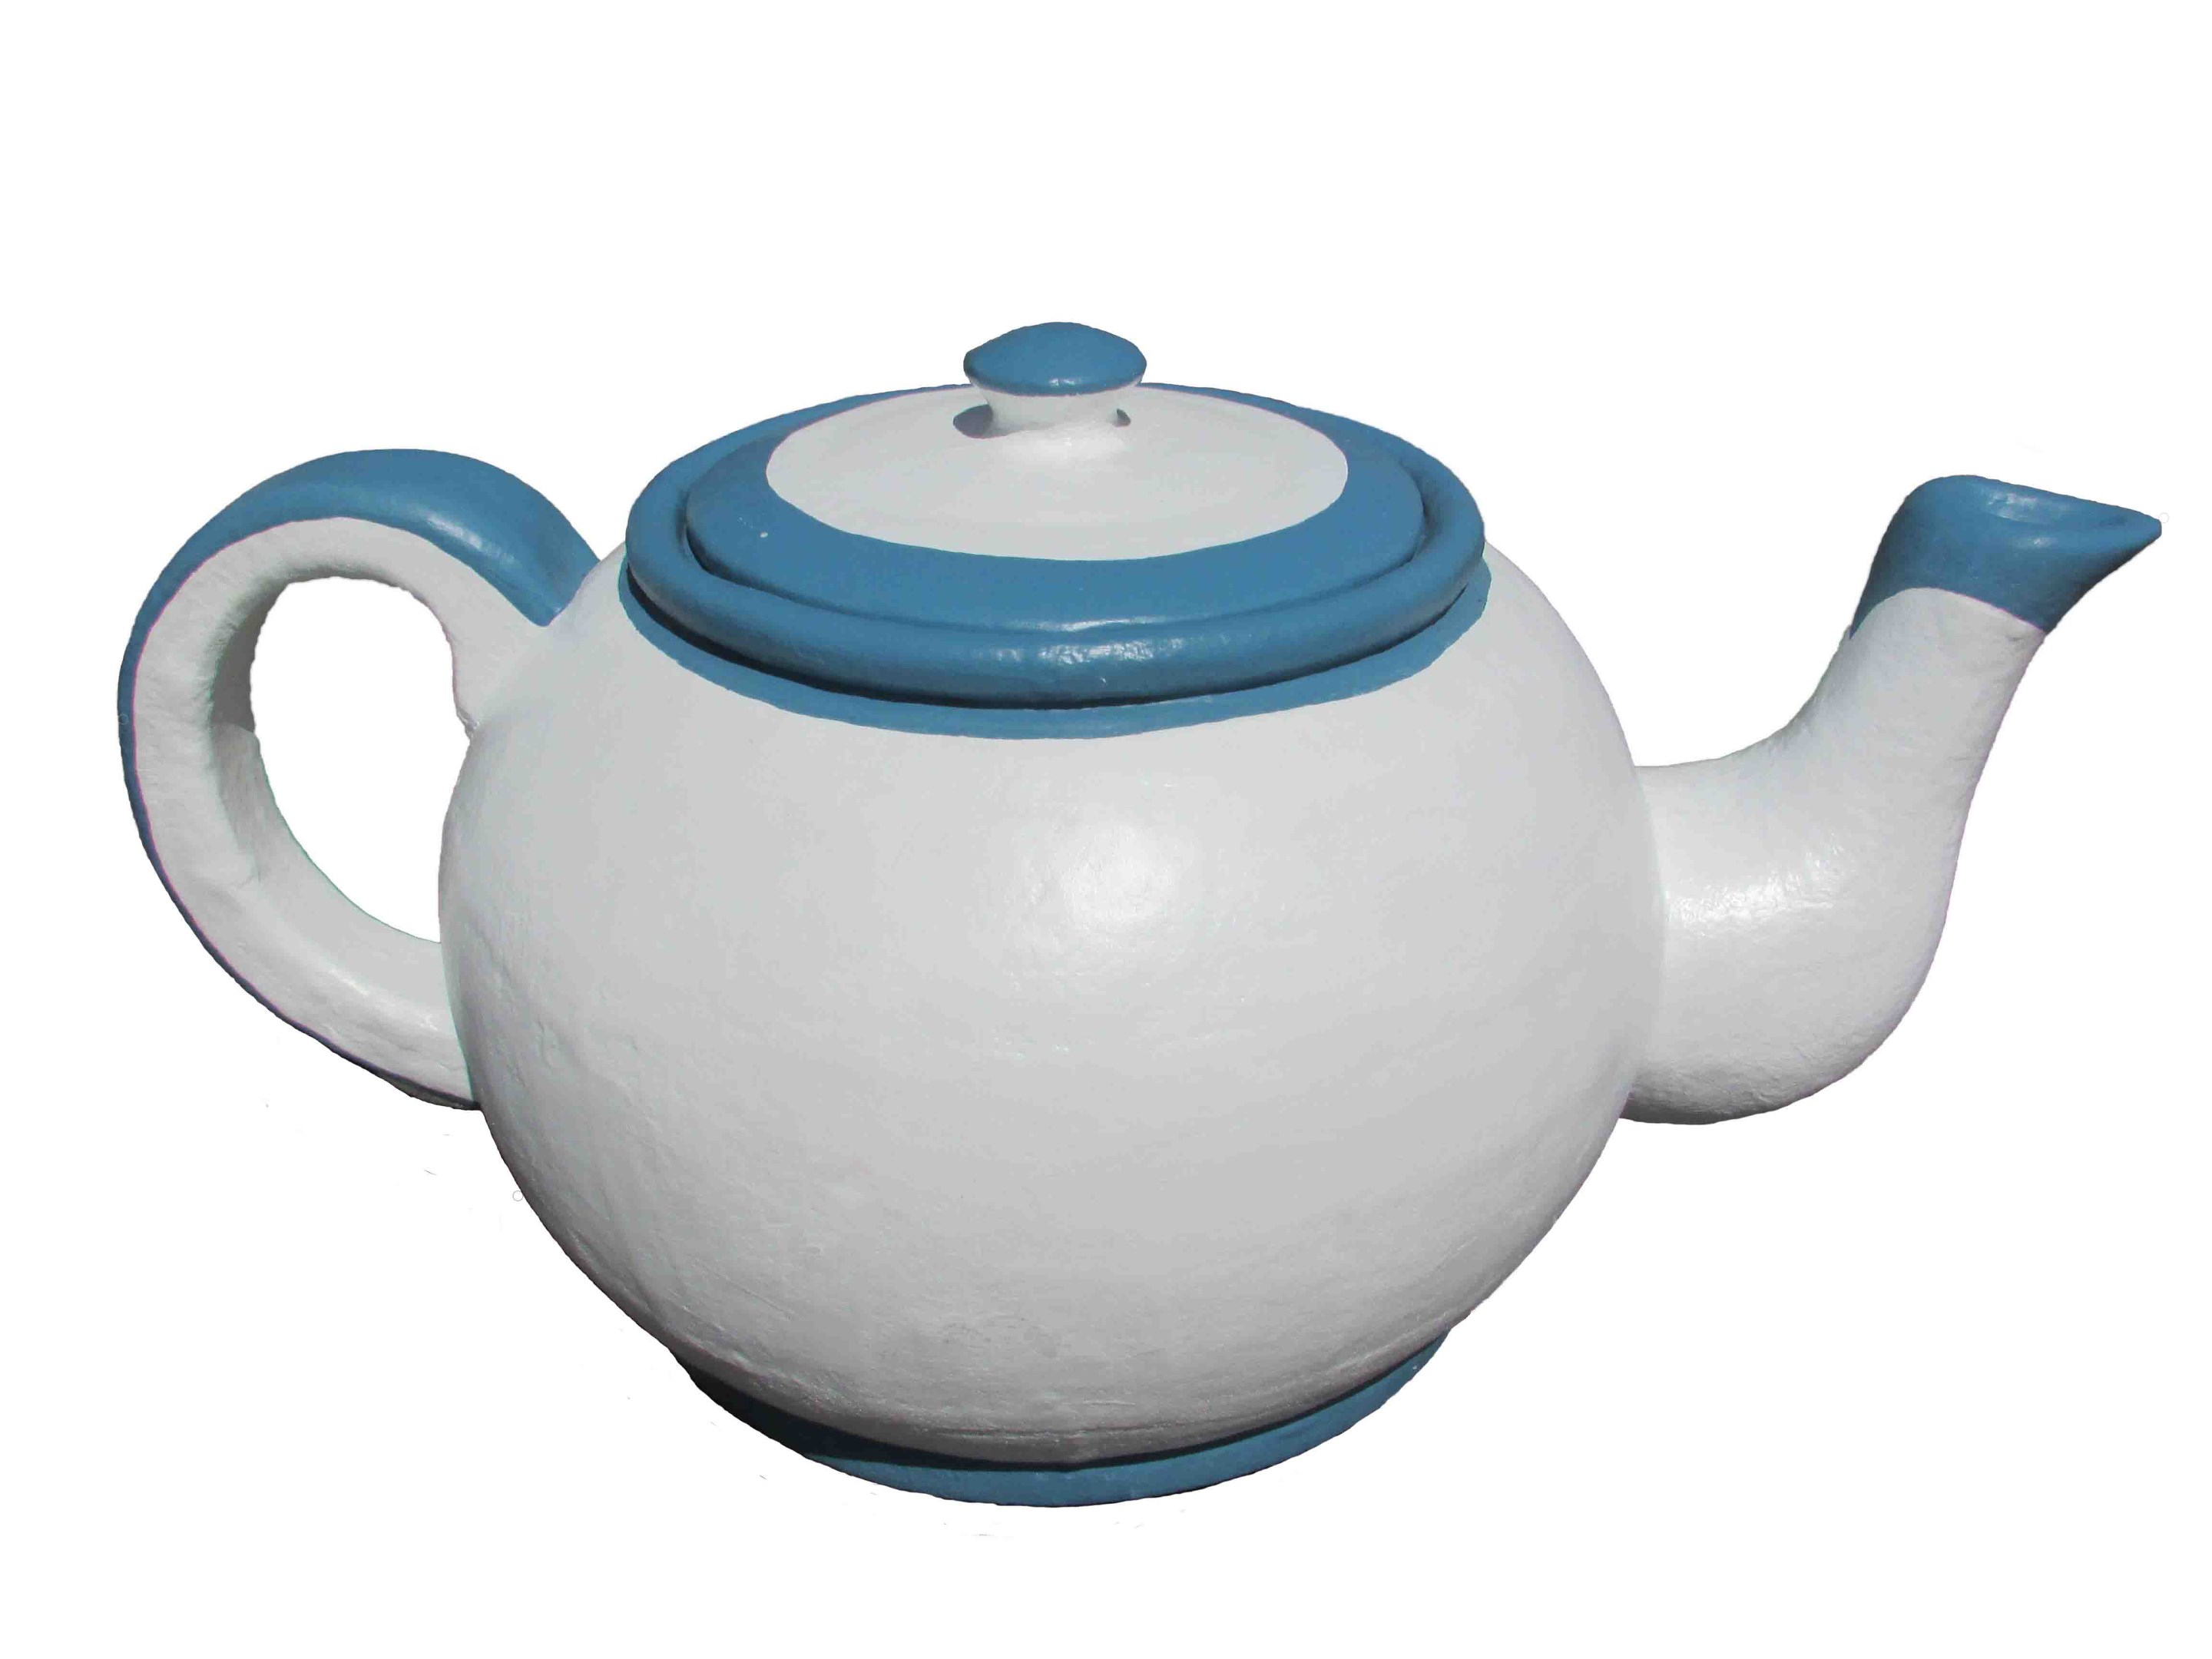 Giant Teapot Prop